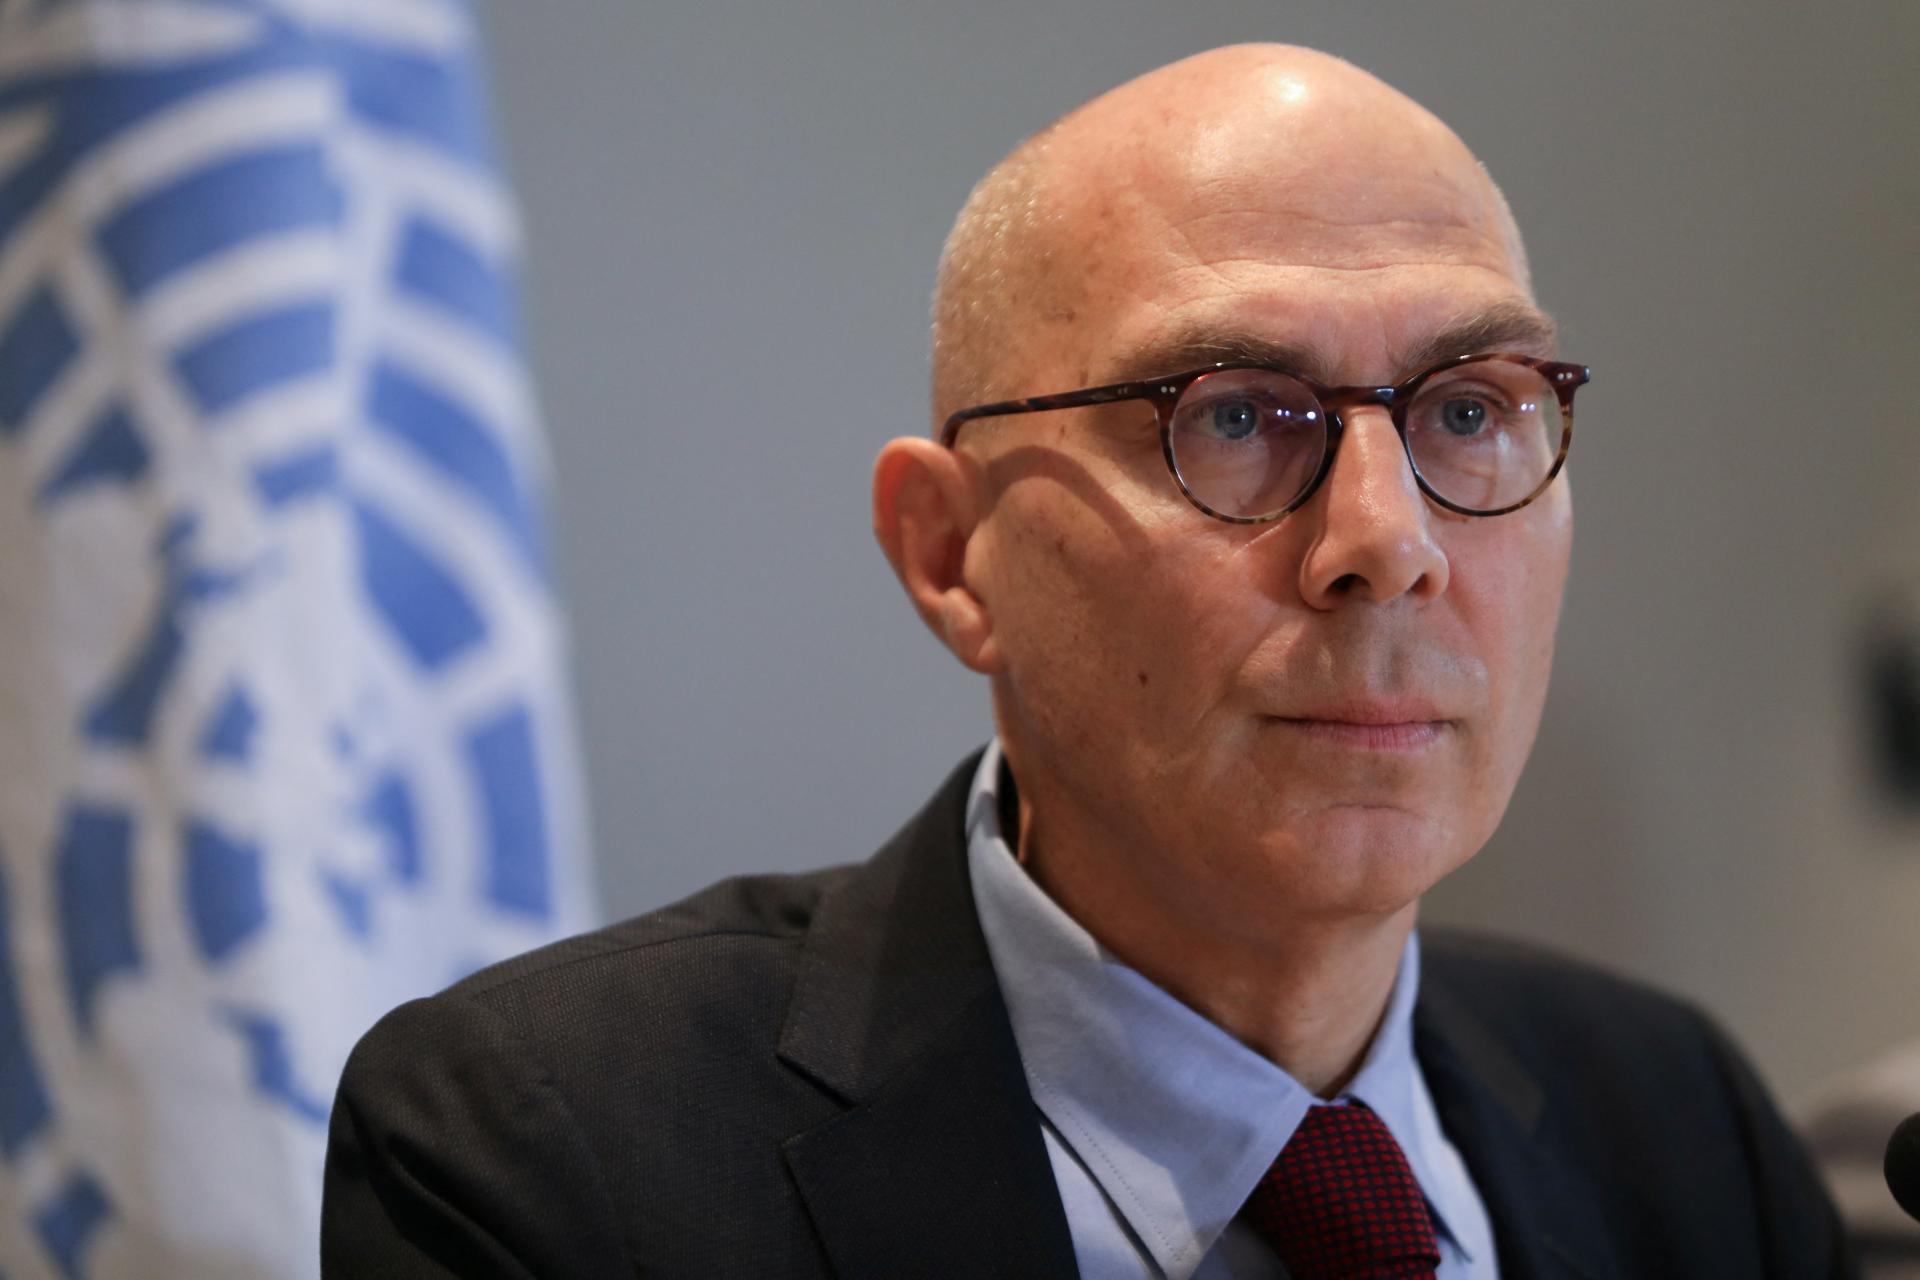 Izrael odmietol vpustiť do krajiny komisára OSN pre ľudské práva